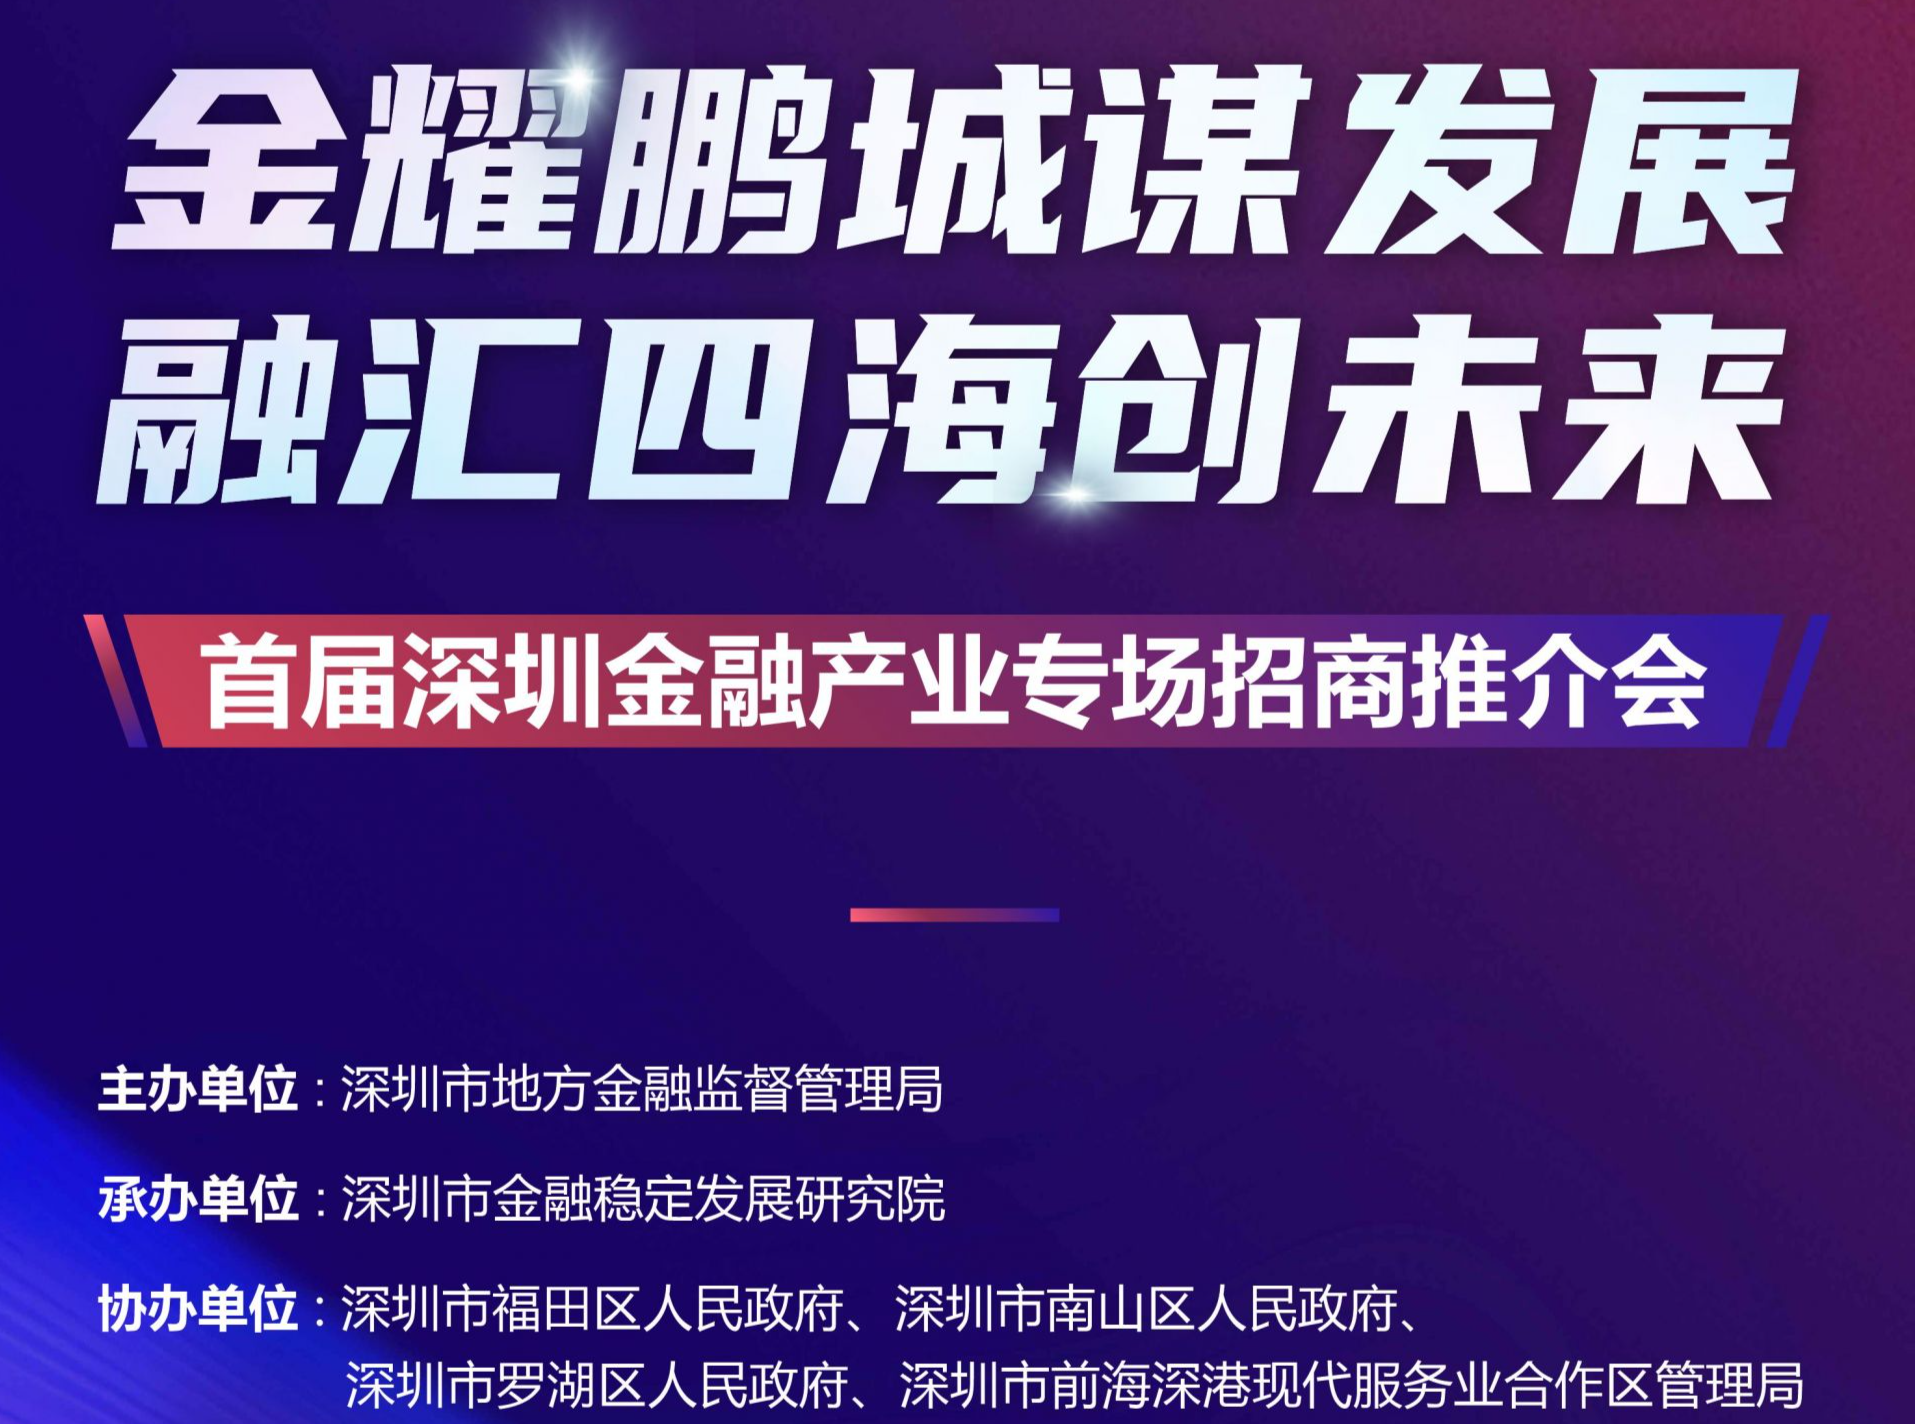 首届深圳金融产业专场招商推介会将于1月10日举行